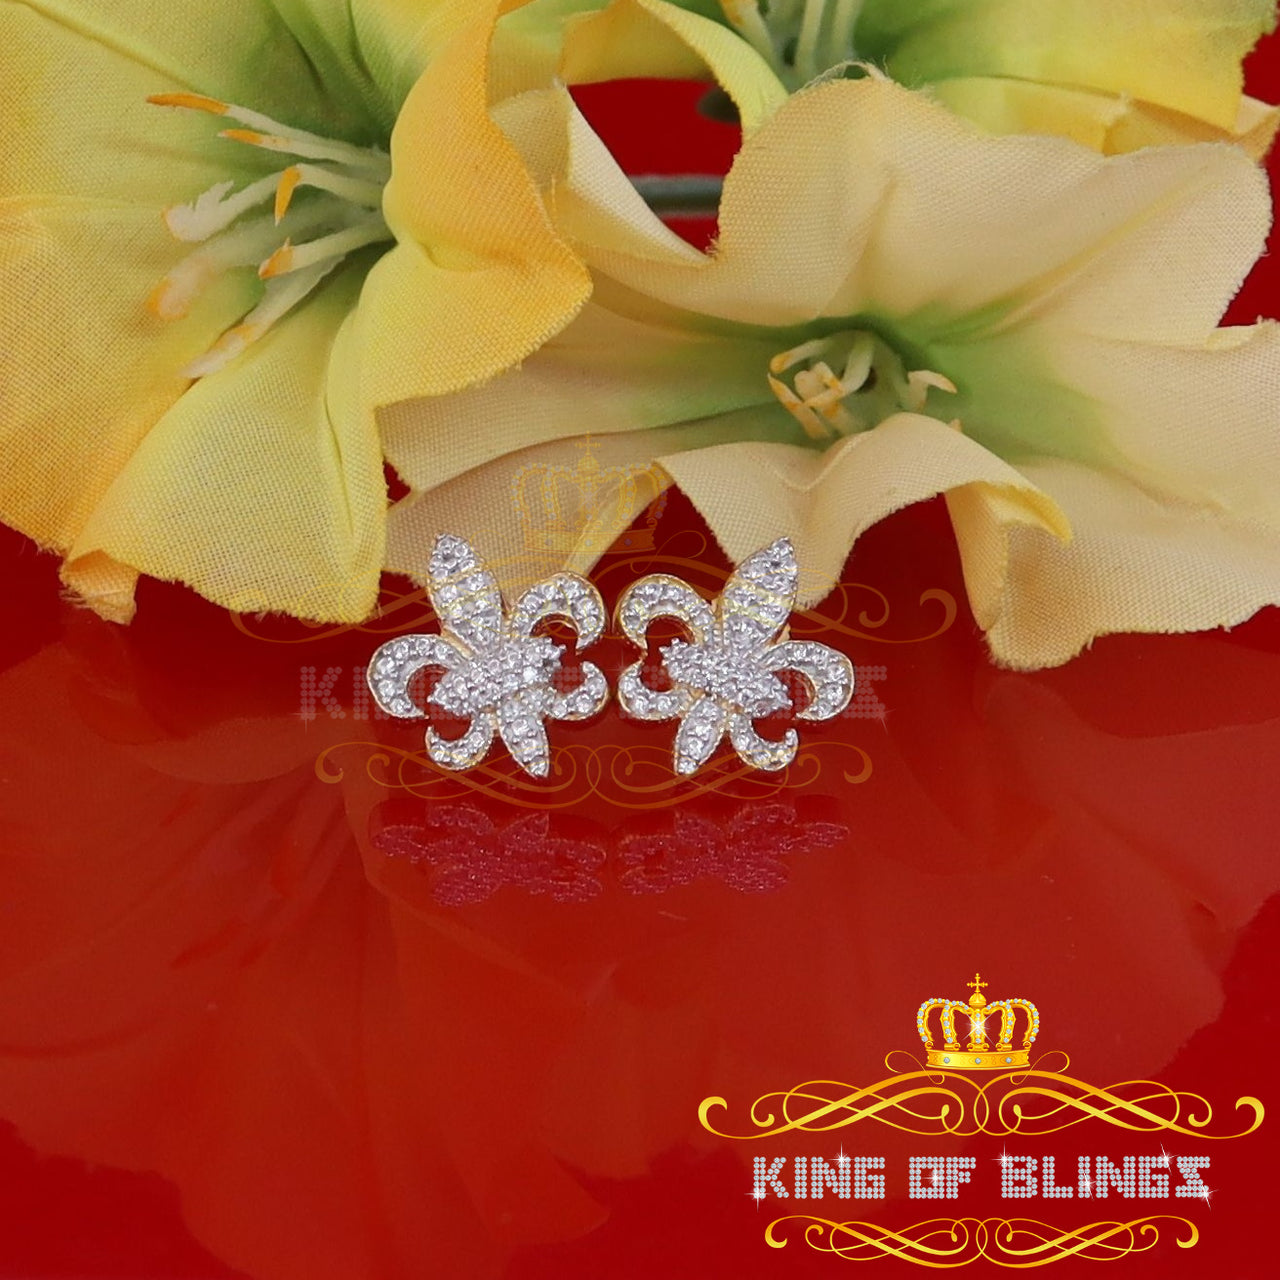 King of Bling's Fleur de Lis Yellow 925 Silver Screw Back 0.96ct Cubic Zirconia Women's Earrings KING OF BLINGS